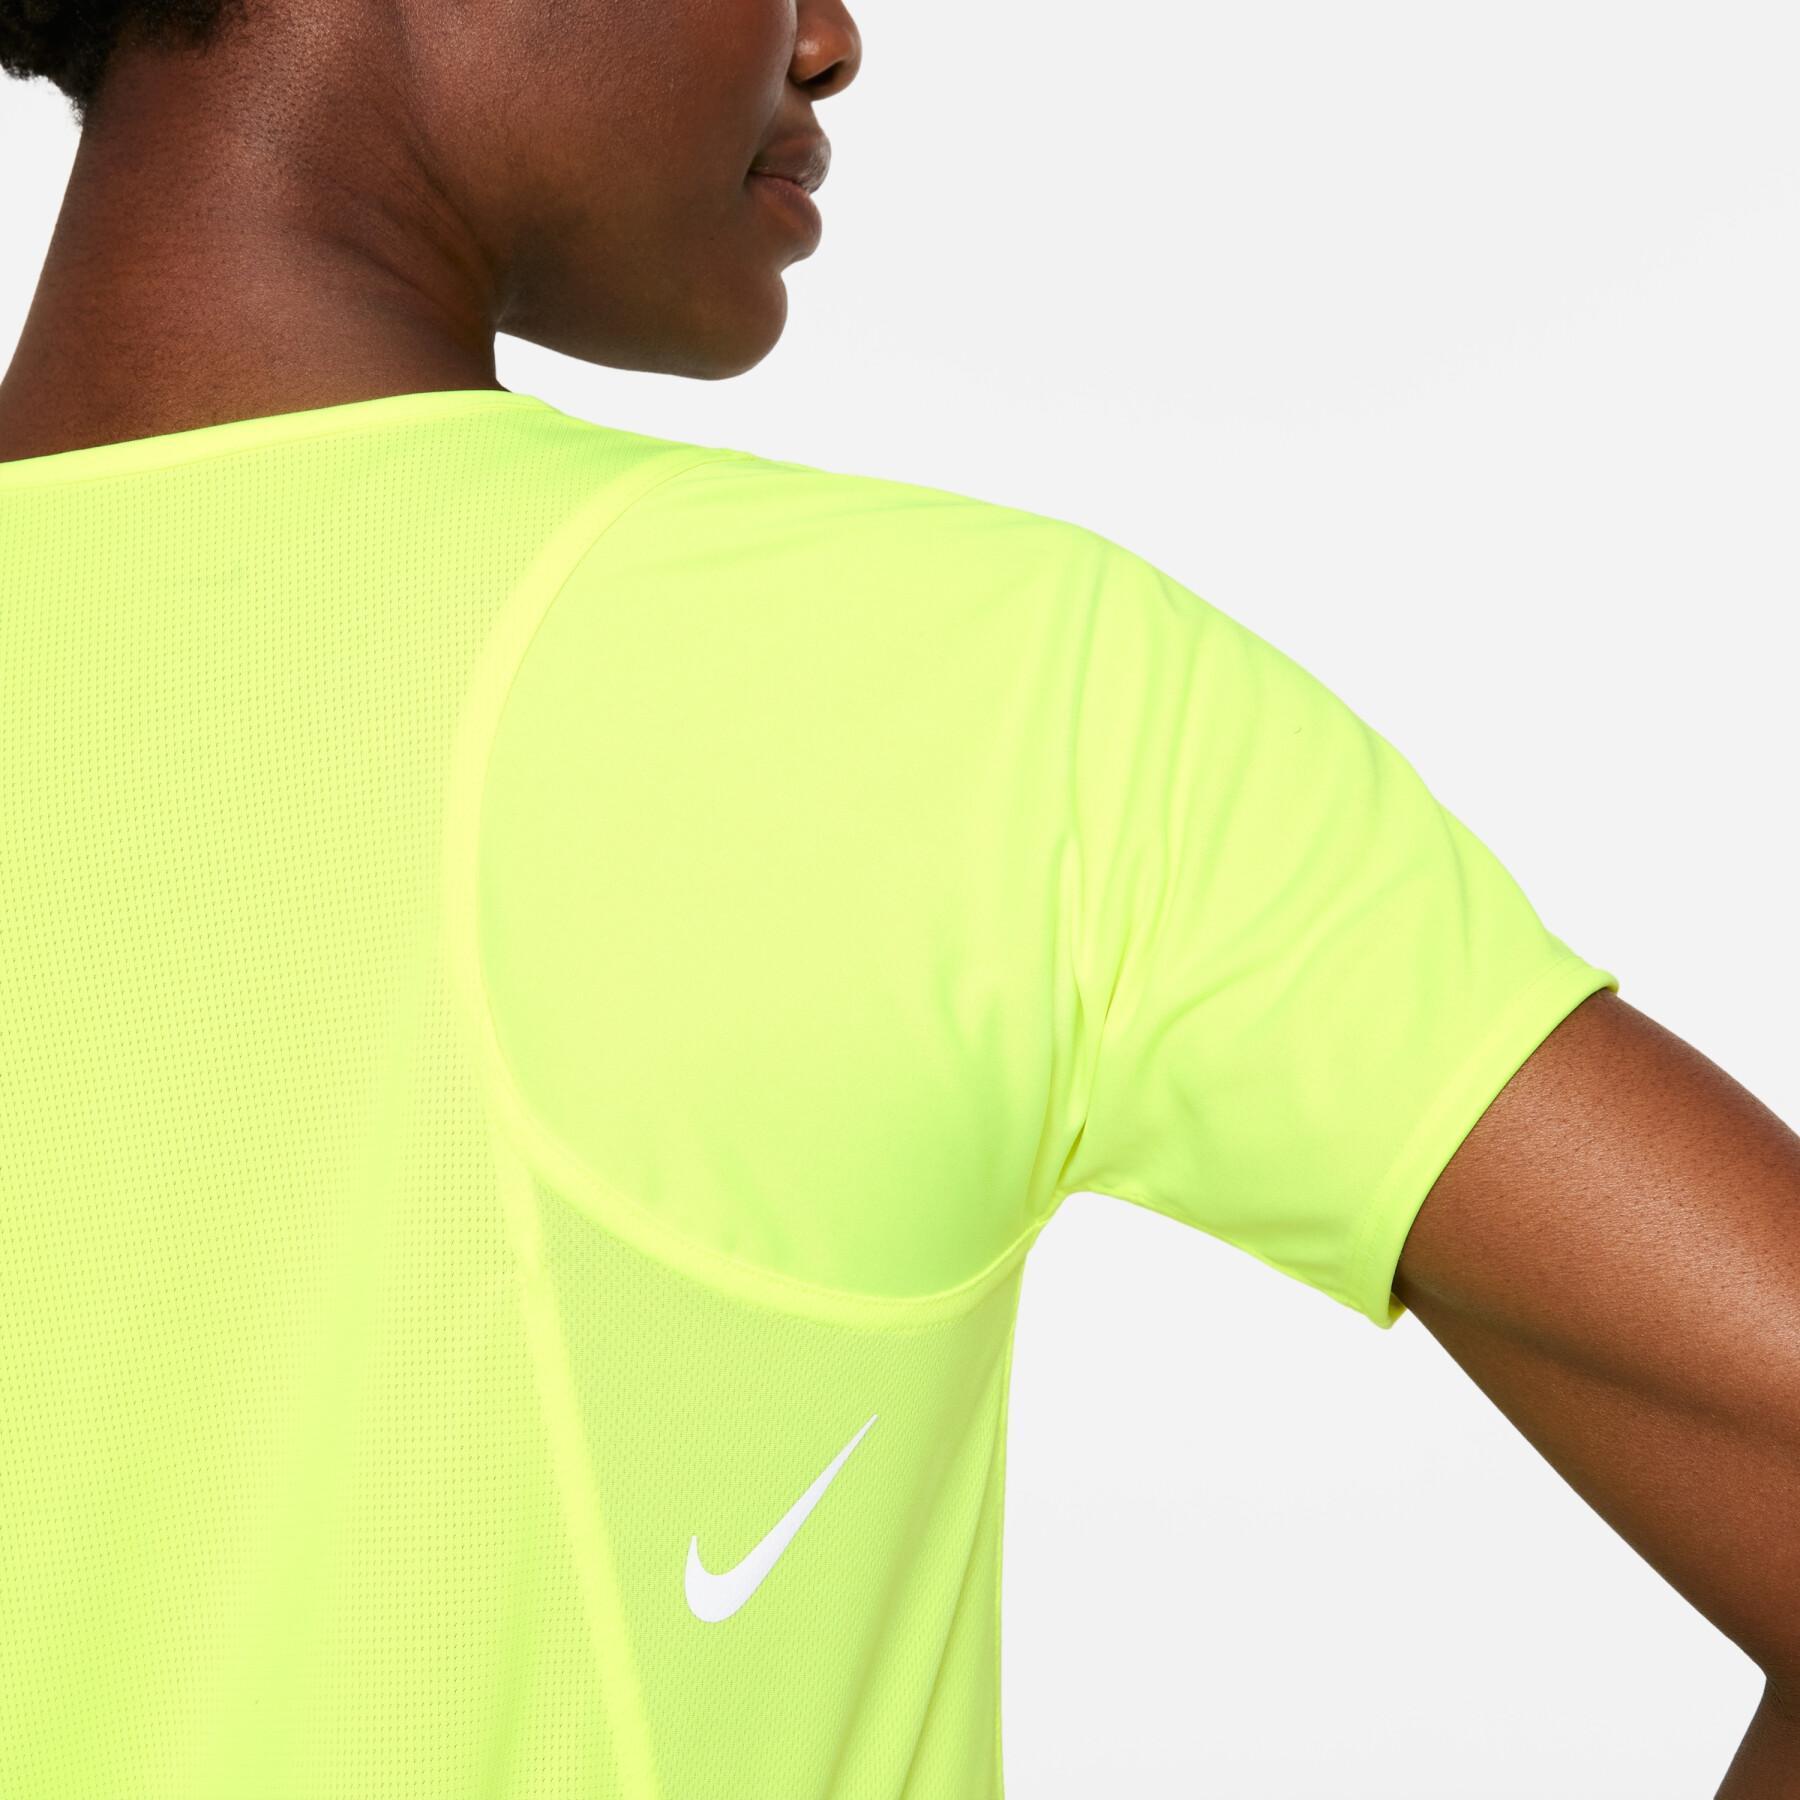 Dames-T-shirt Nike dynamic fit race